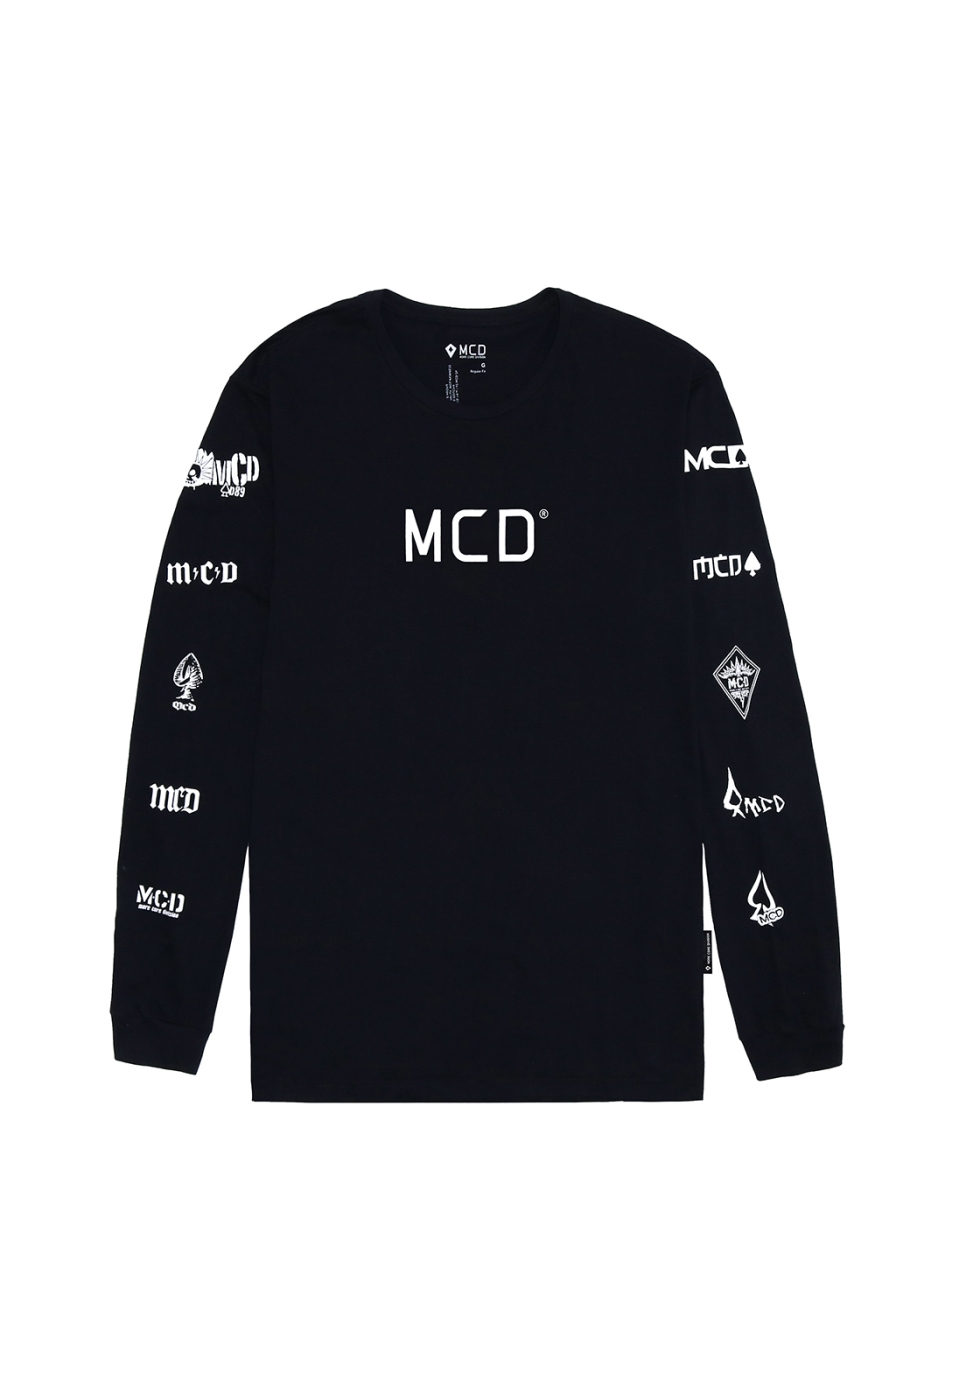 (camiseta especial novo LOGO MCD) MCD